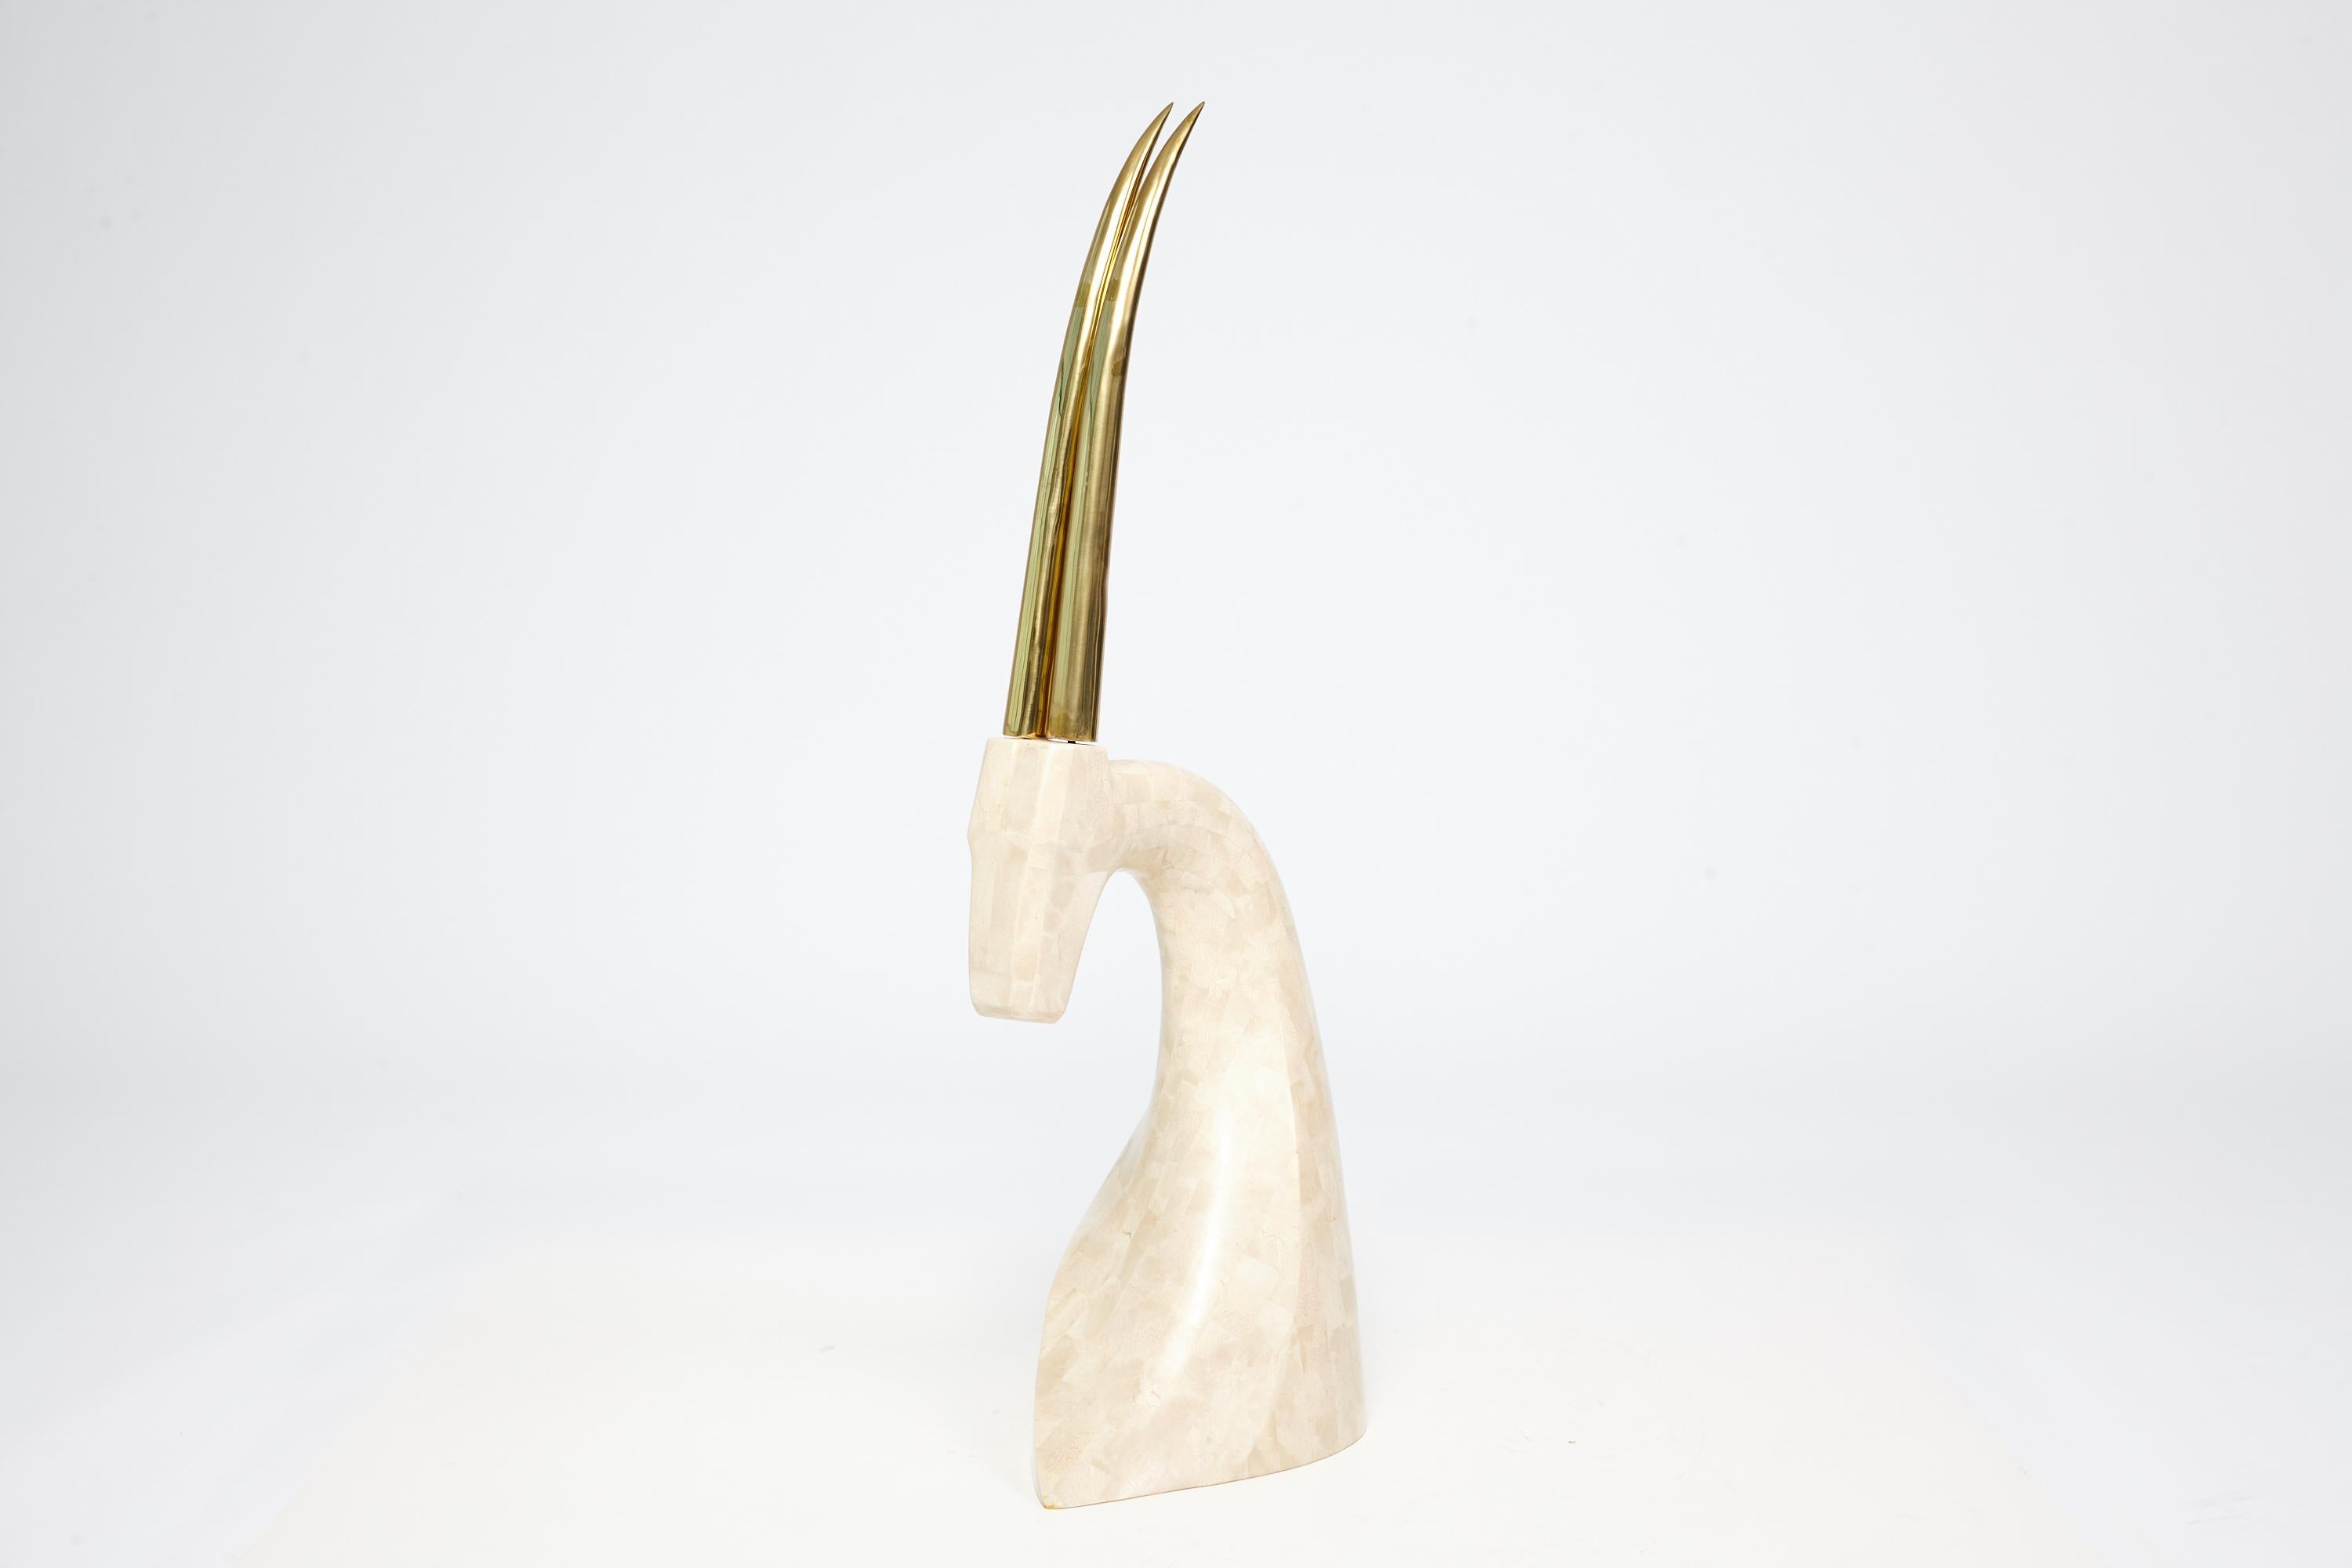 Sexy, élégante et chic. Sculpture moderne du milieu du siècle - peut-être par Maitland Smith - d'une gazelle en travertin tessellé avec de grandes cornes en laiton. Sa grande taille attire l'attention, ce qui en fait une pièce maîtresse. Il se marie